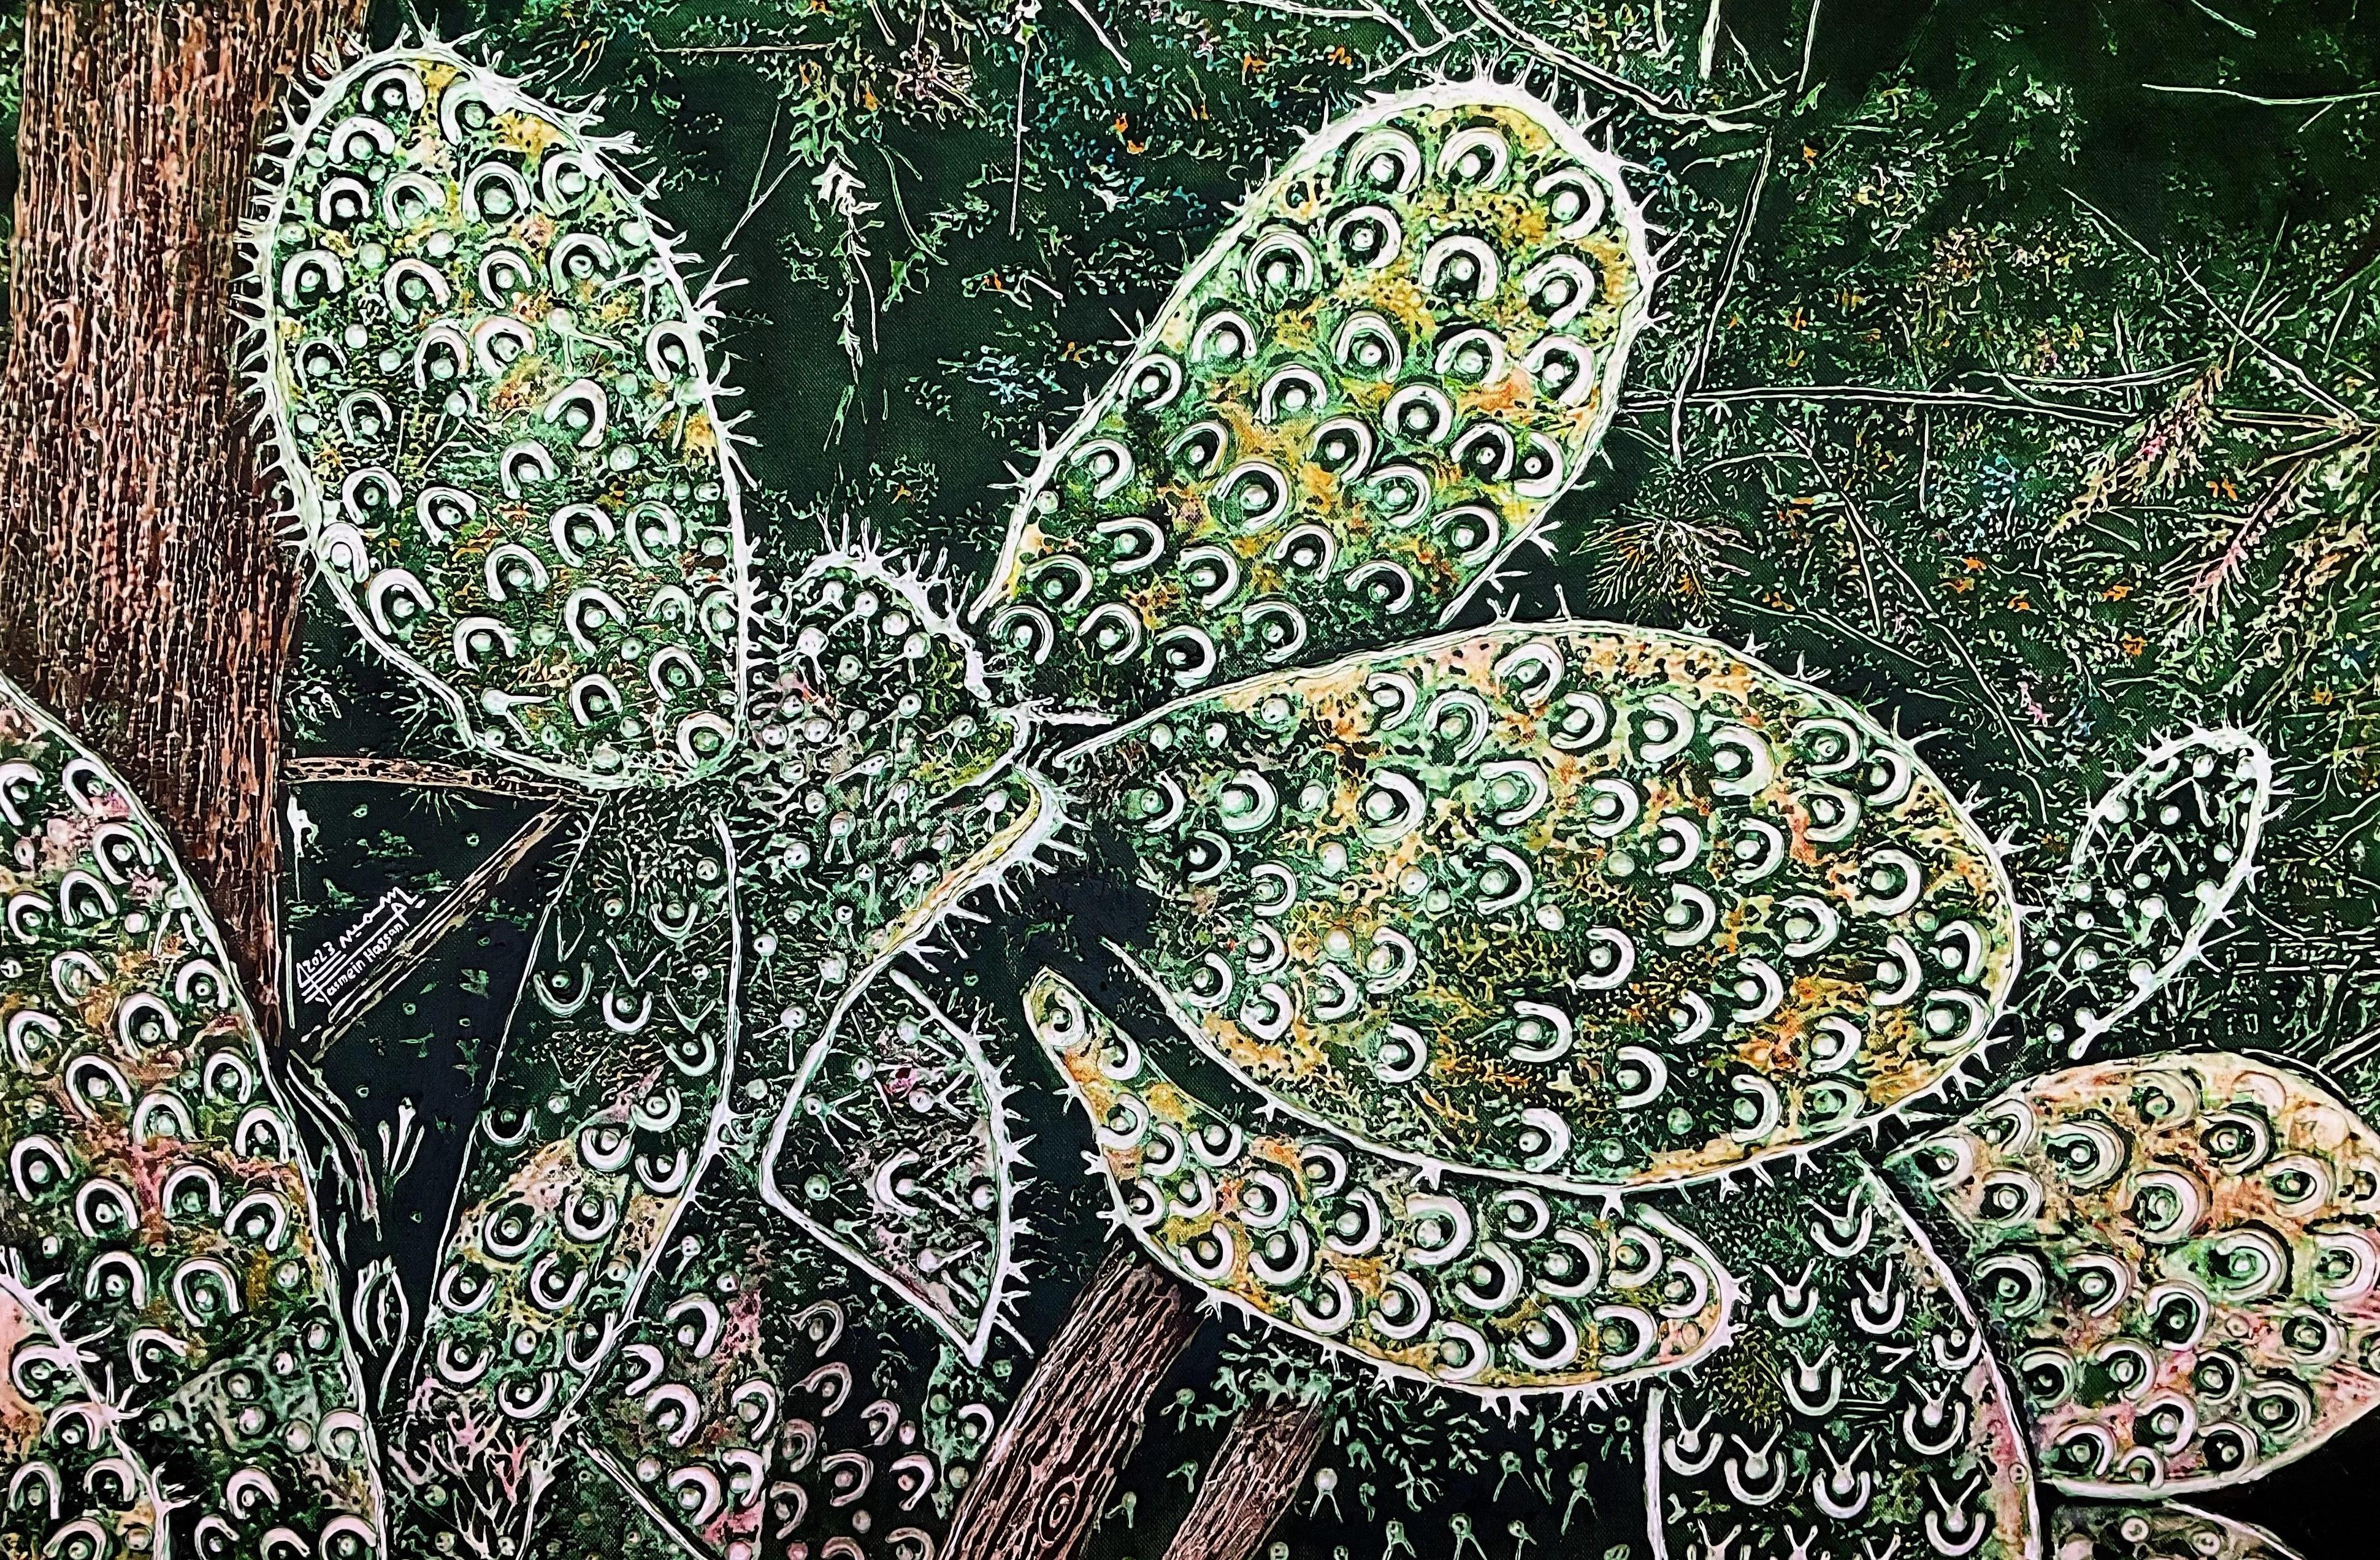 "Kaktusfeigen V" Abstraktes Gemälde 31,5" x 47" Zoll von YASMINE HASSAN

Yasmin Hassans Stillleben mit Kakteen und anderen nüchternen Blättern kann man kaum als solche bezeichnen, denn sie sind voller Bewegung und lebhafter Energie. Ihre